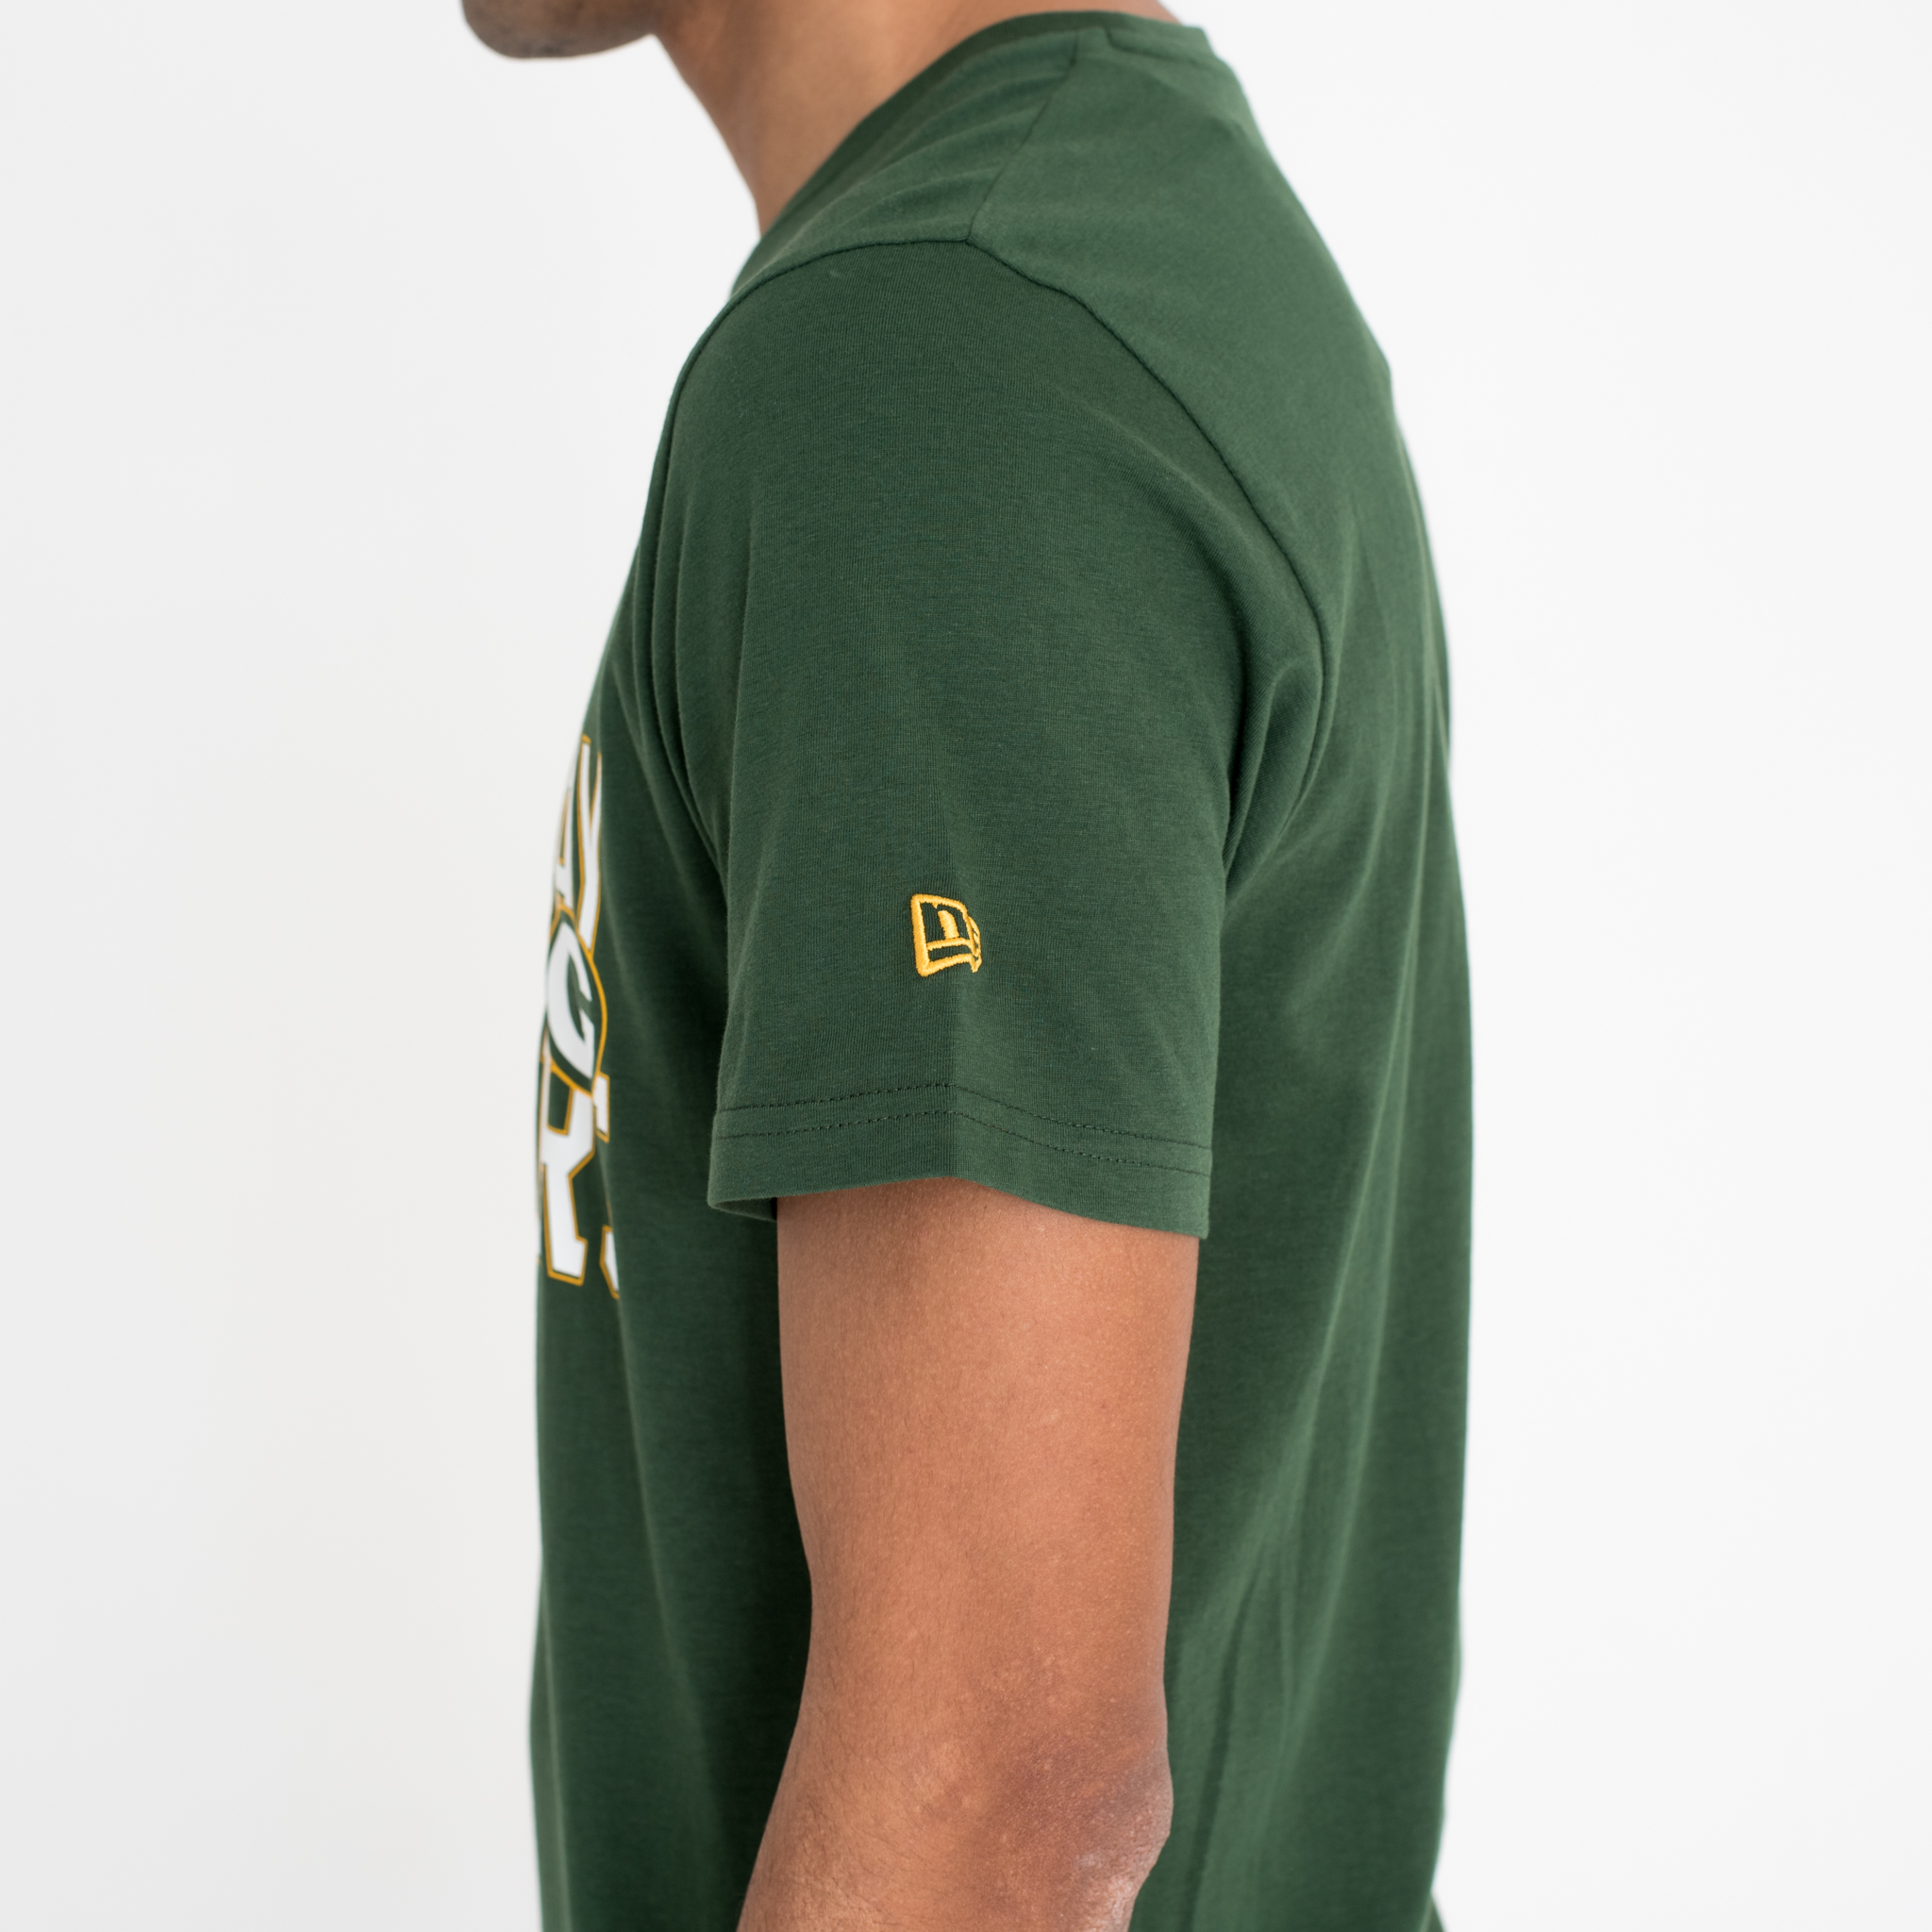 Camiseta Green Bay Packers Stacked Wordmark, verde